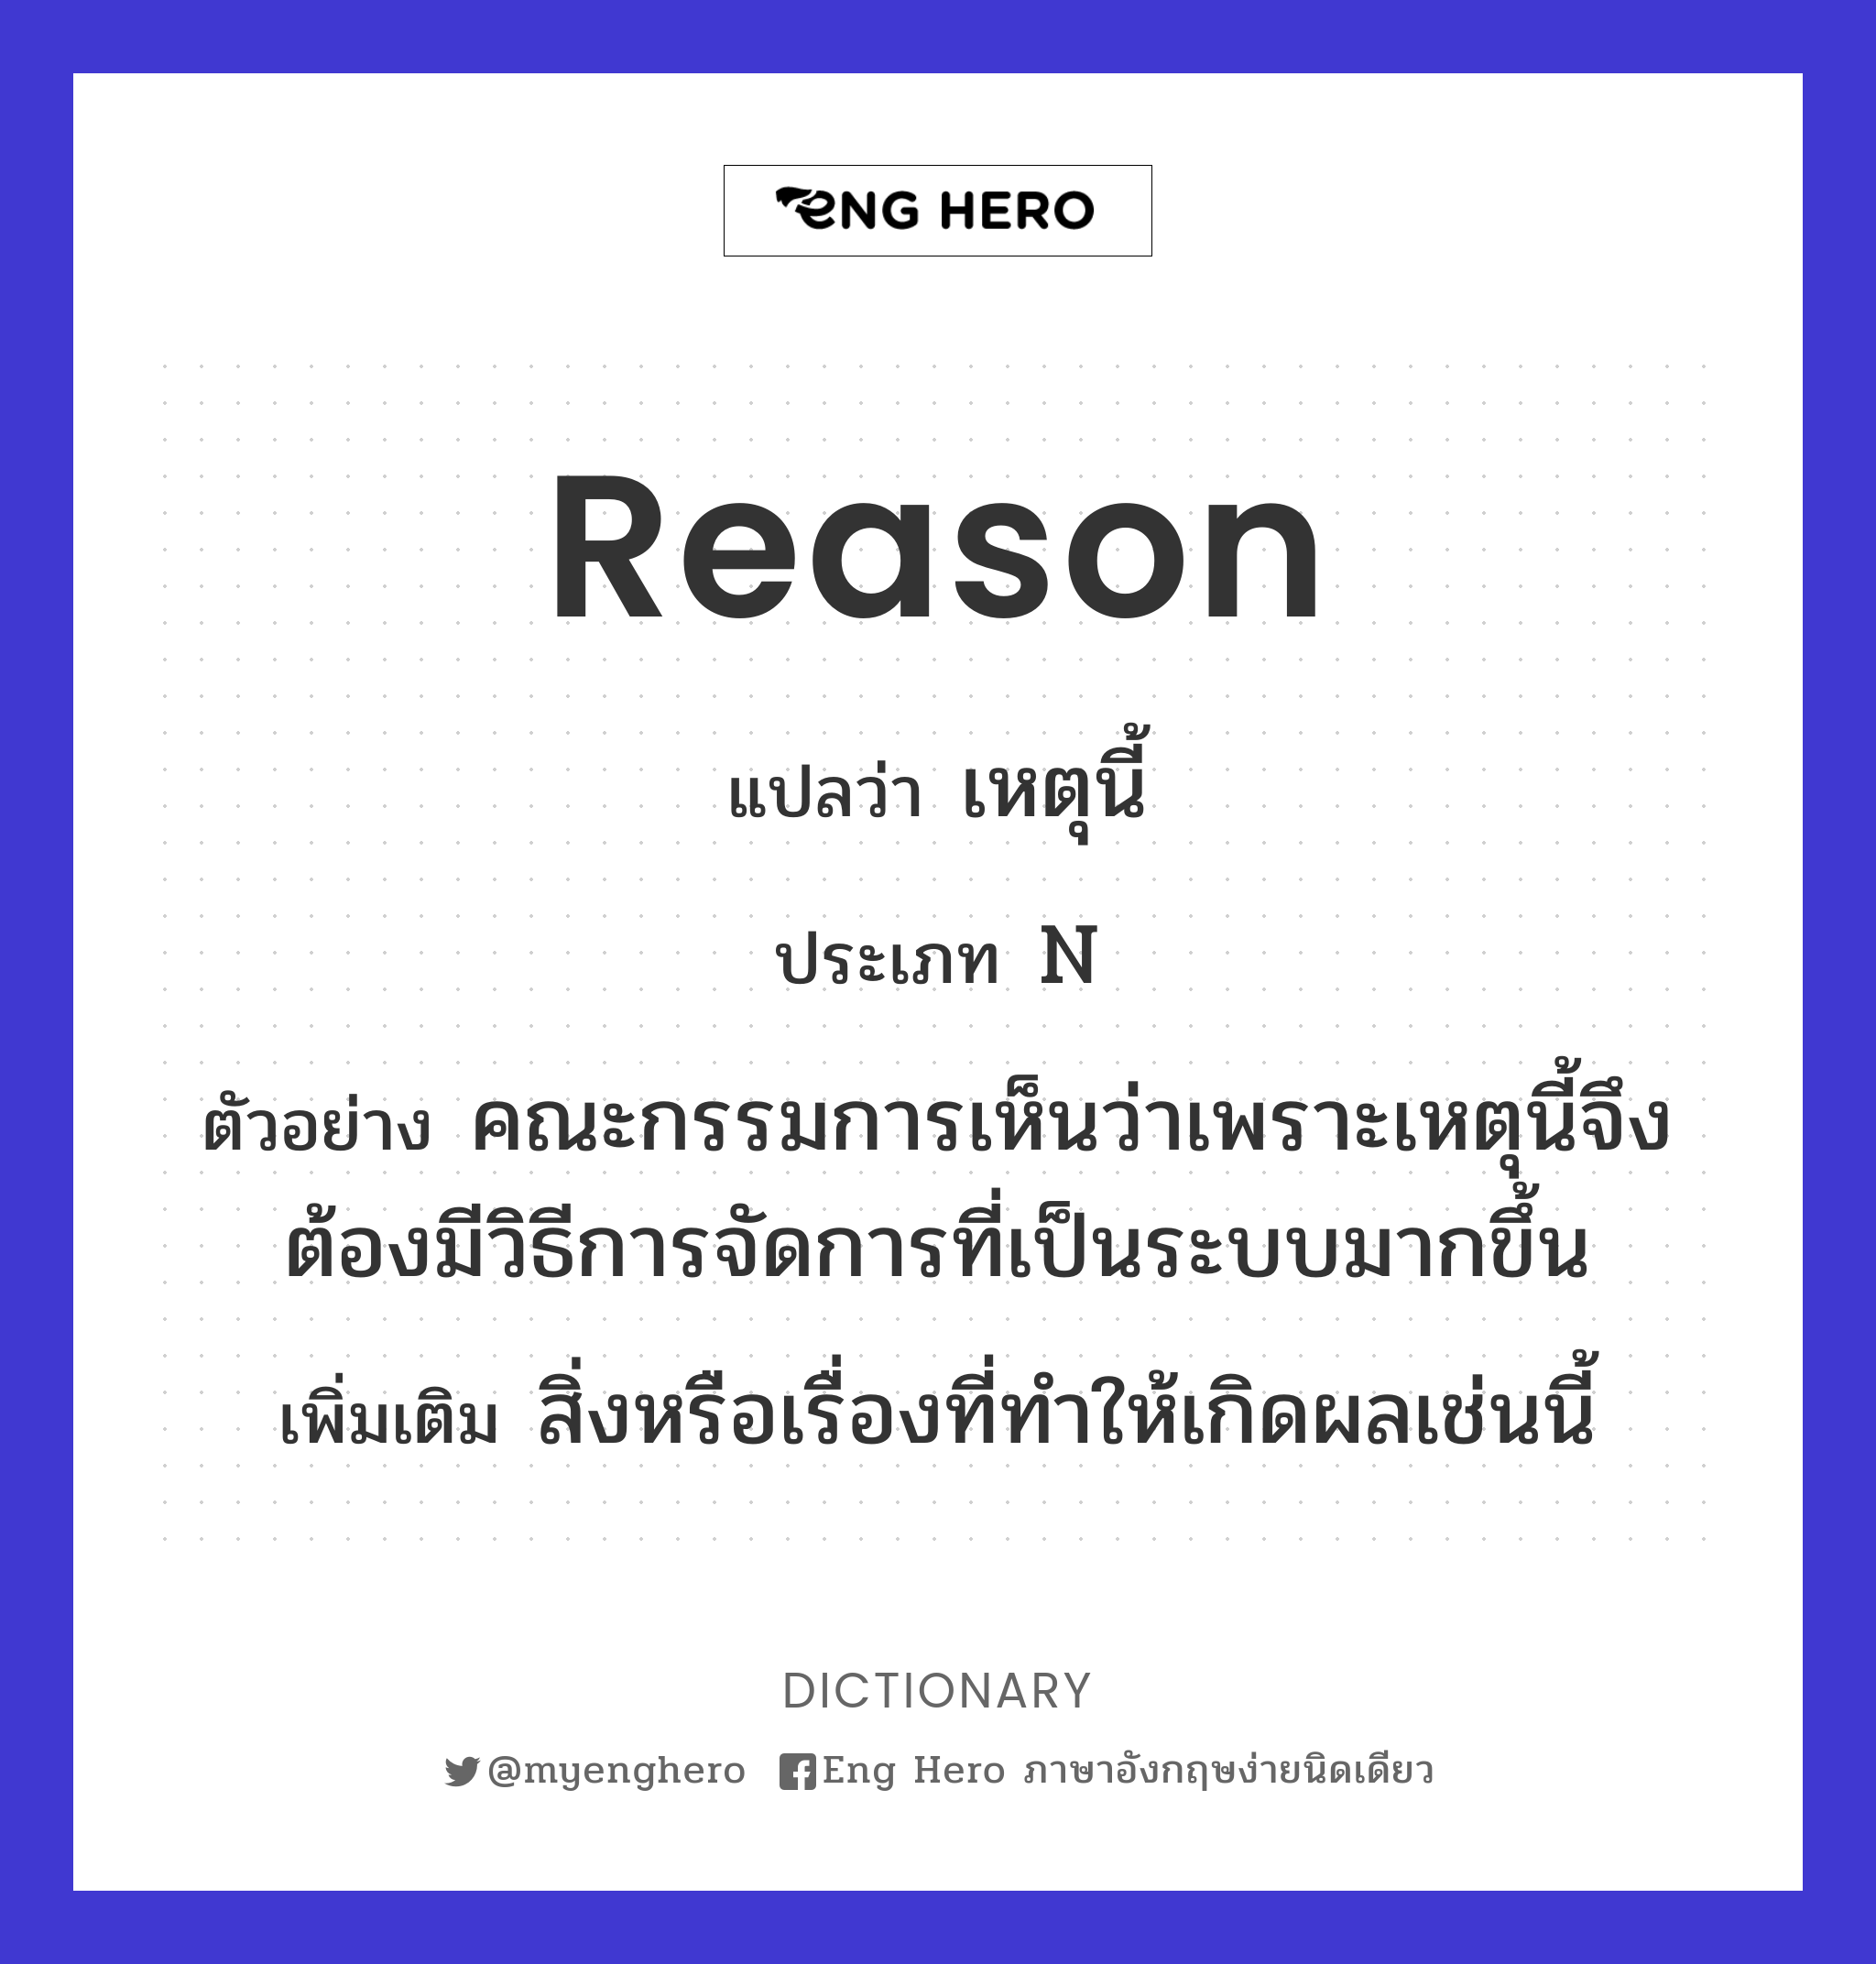 reason